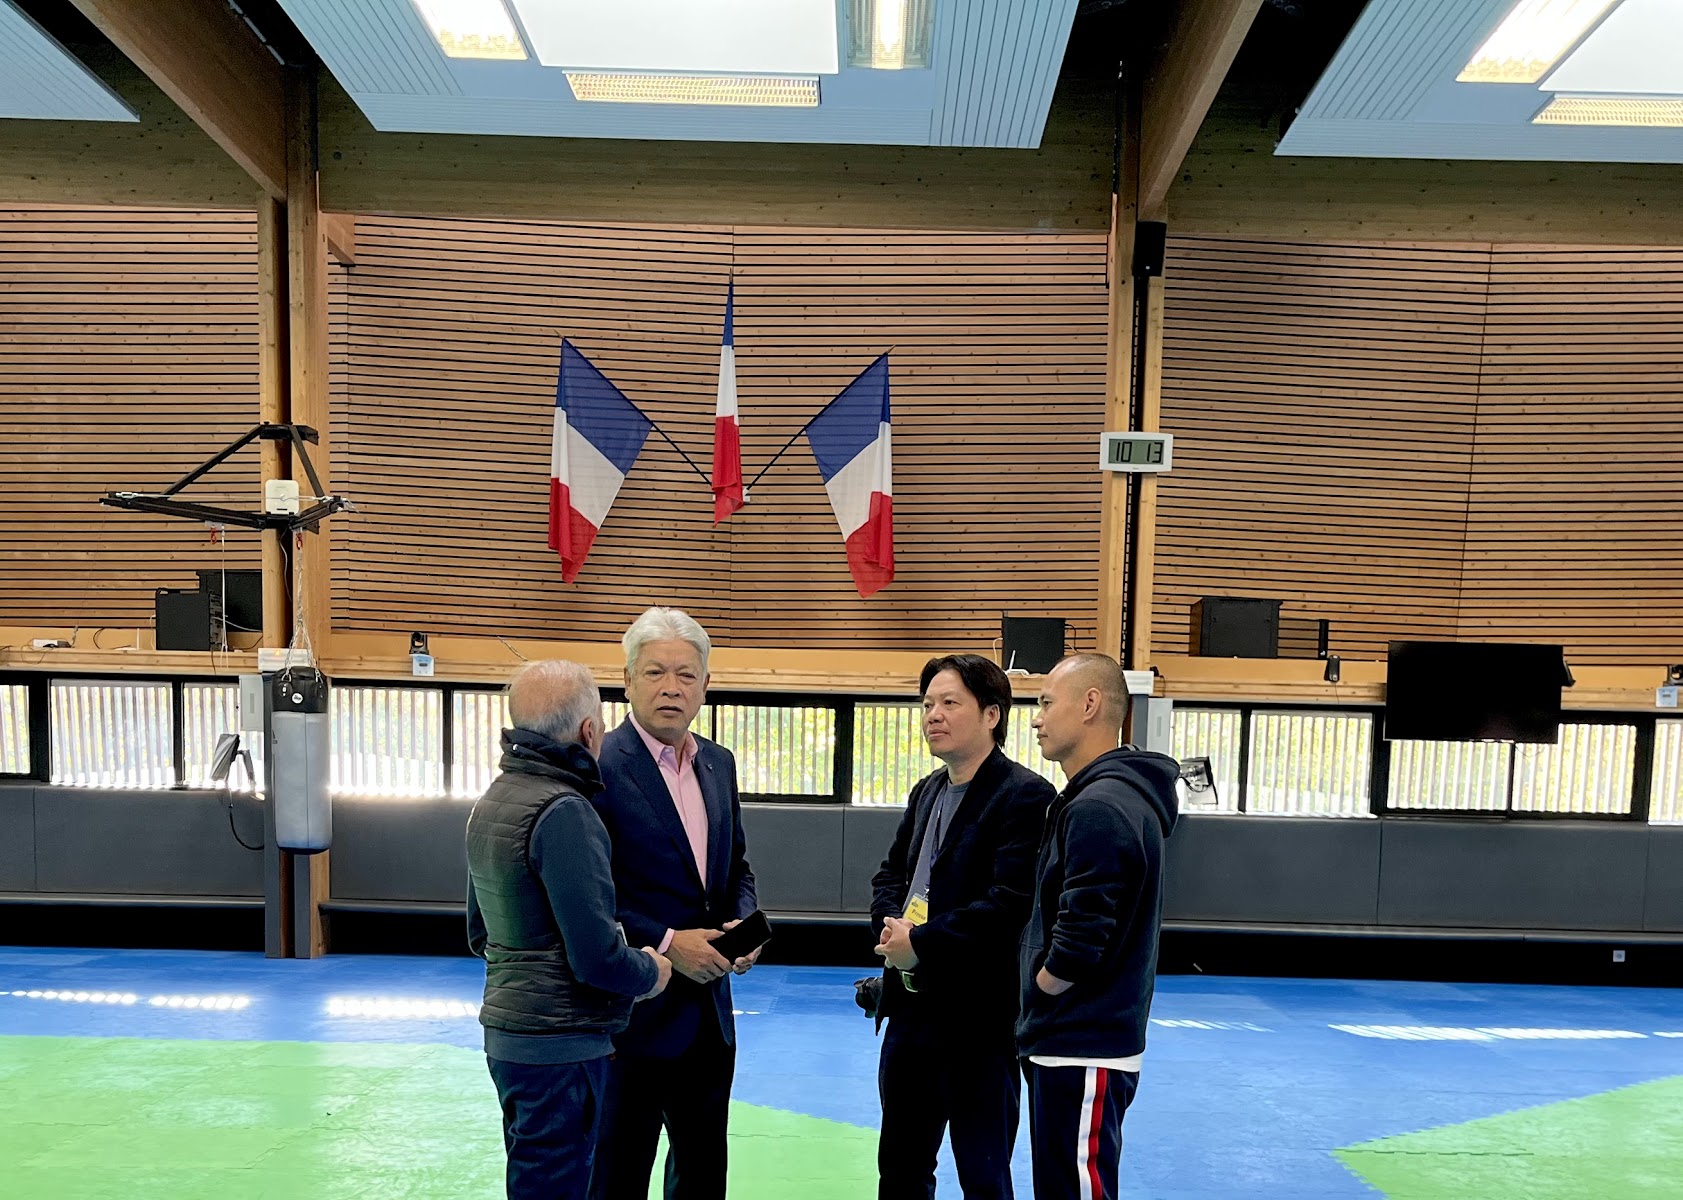 Đoàn cán bộ VTF thăm phòng tập hiện đại môn Taekwondo tại Trung tâm INSEP (Pháp) (1).jpg